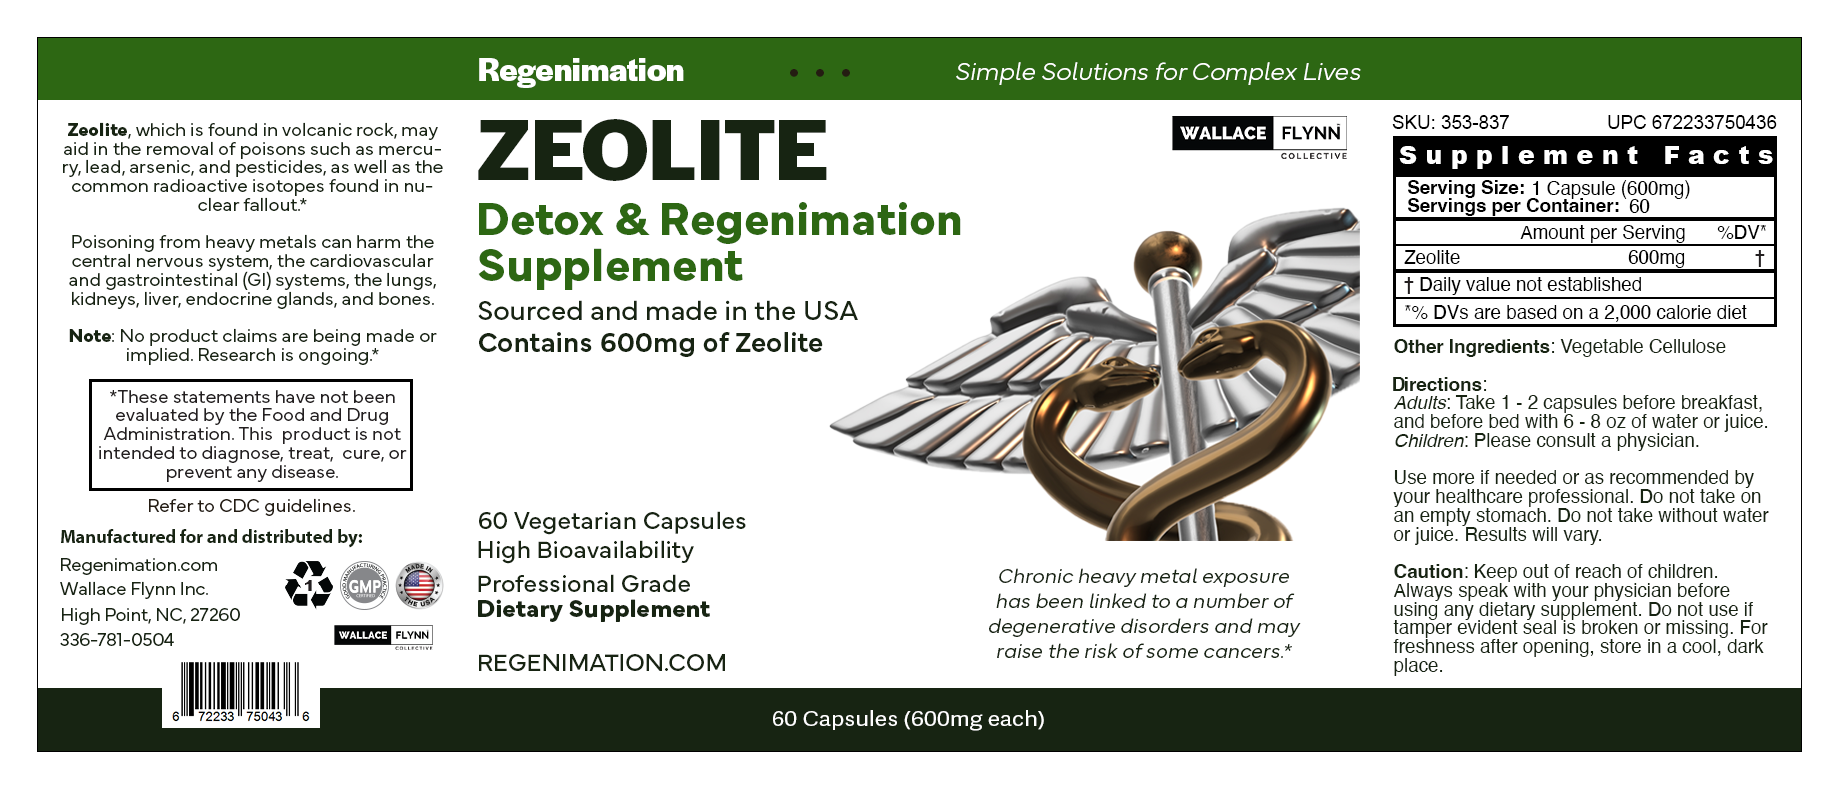 ZEOLITE Heavy Metal Detox Regenimation Supplement 600mg, 60 ct.